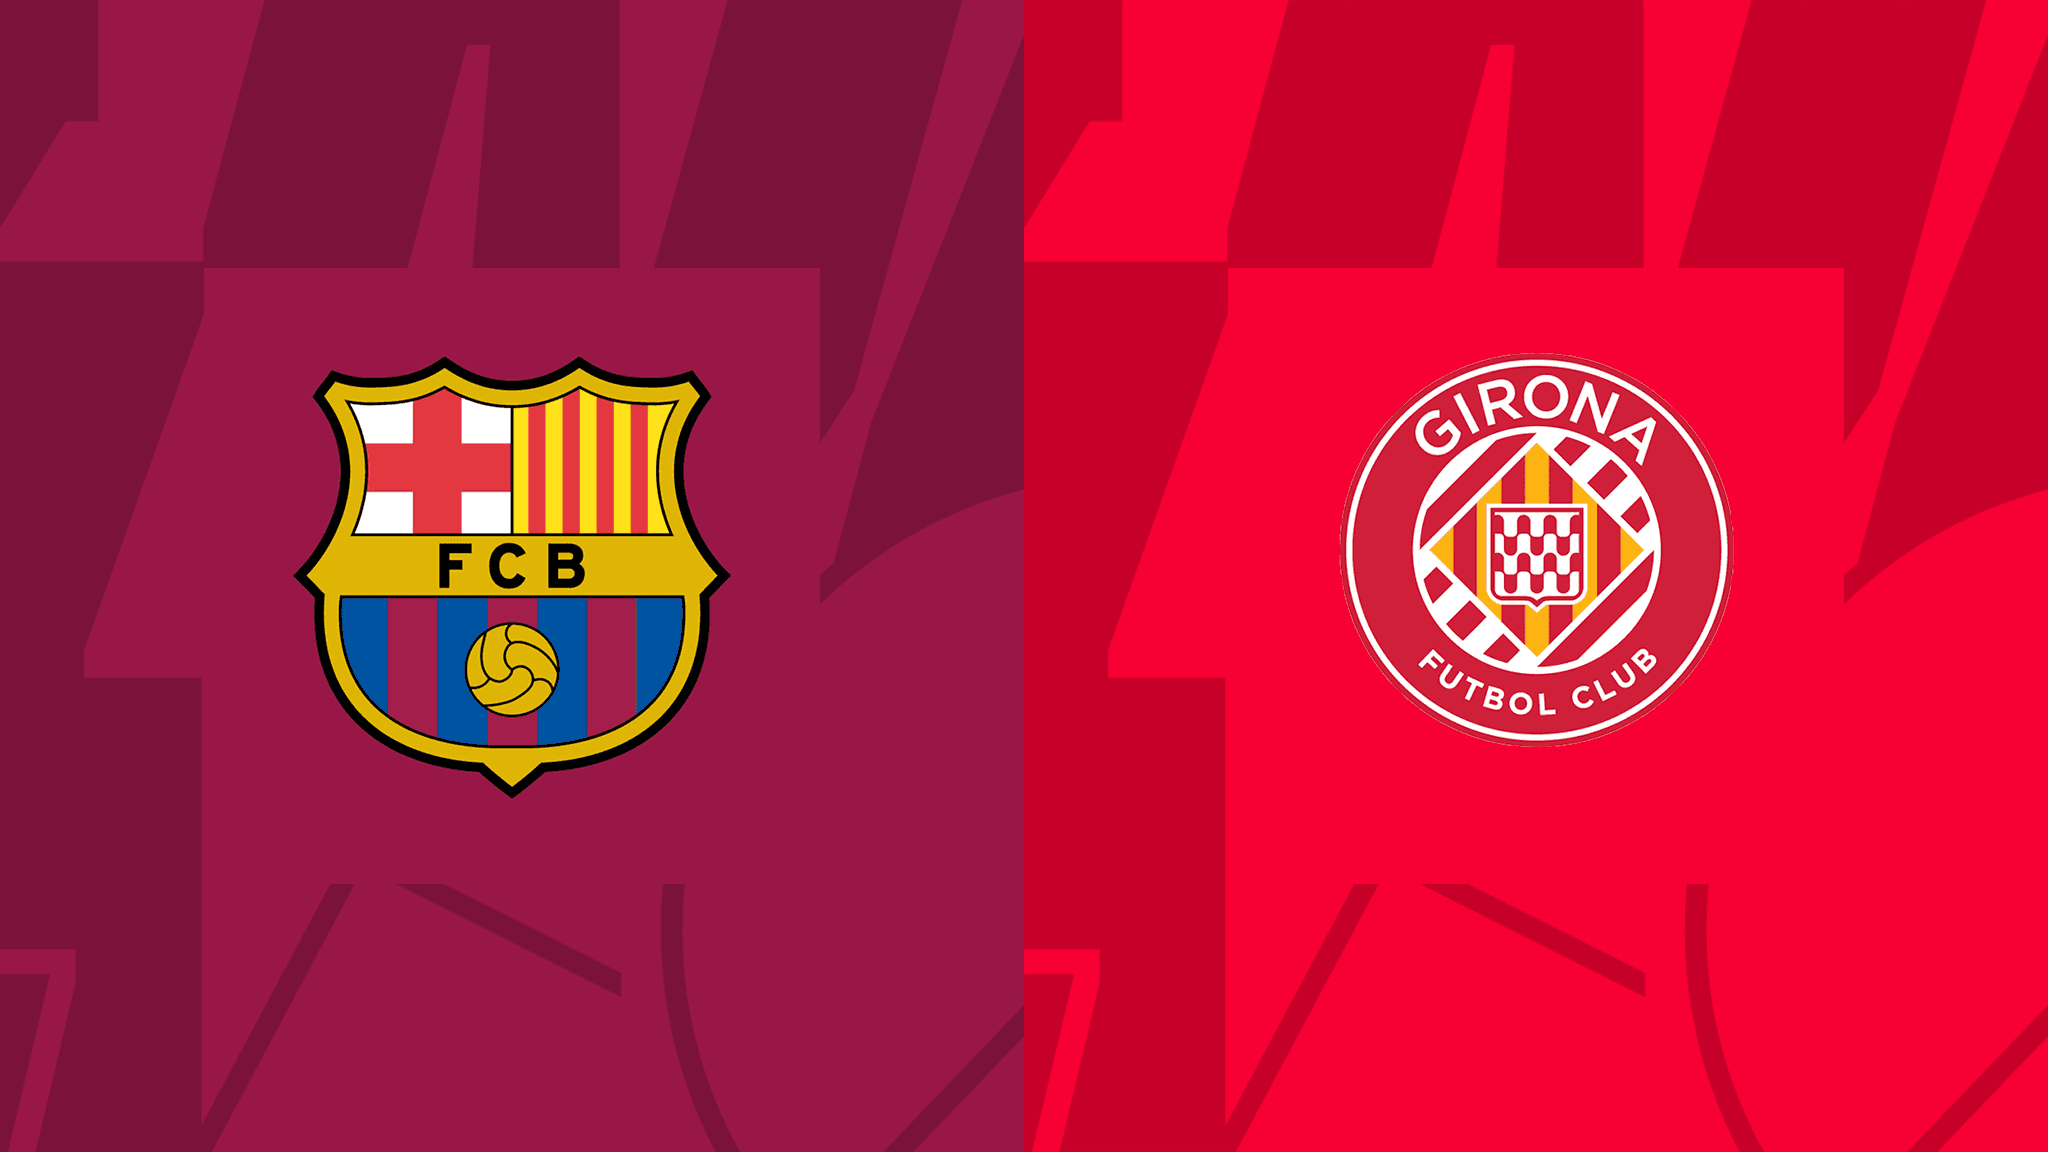 Nhận định Barcelona vs Girona 11/12 lúc 03h00 vòng 16 La Liga